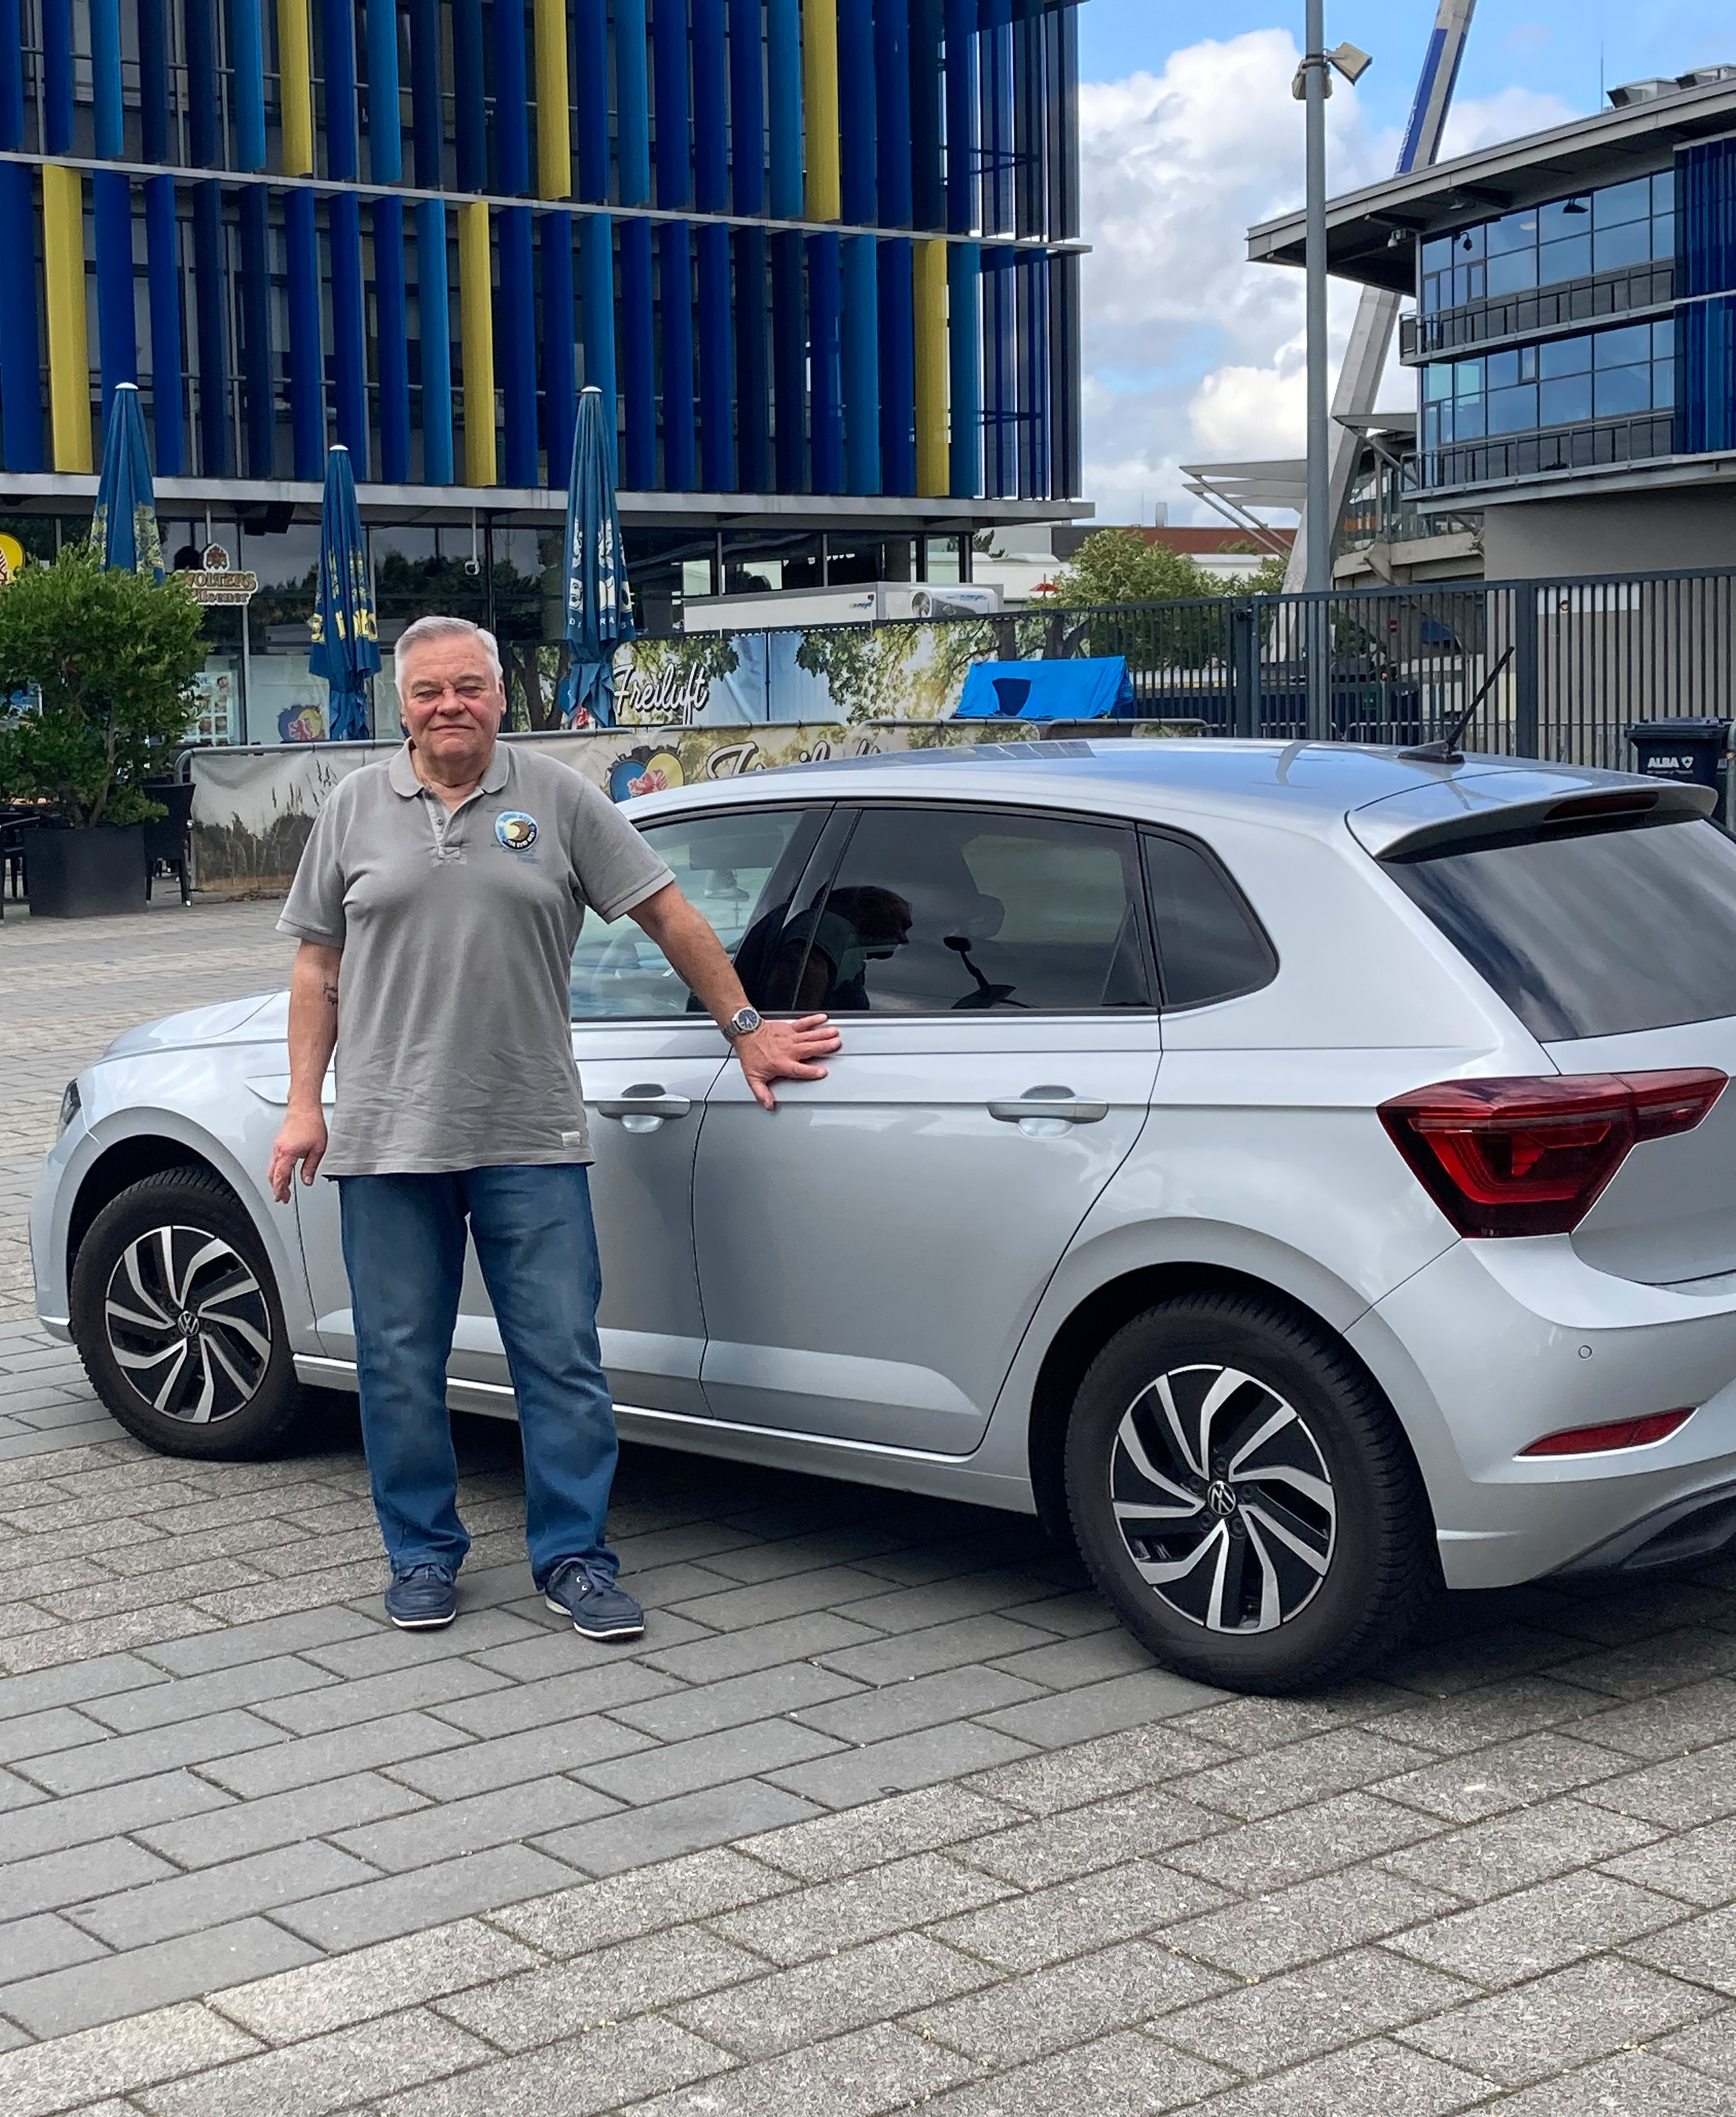 VW Kundenzufriedenheit - Autokauf Polo bei der autoWOBil.de Jahreswagenzentrale in Wolfsburg